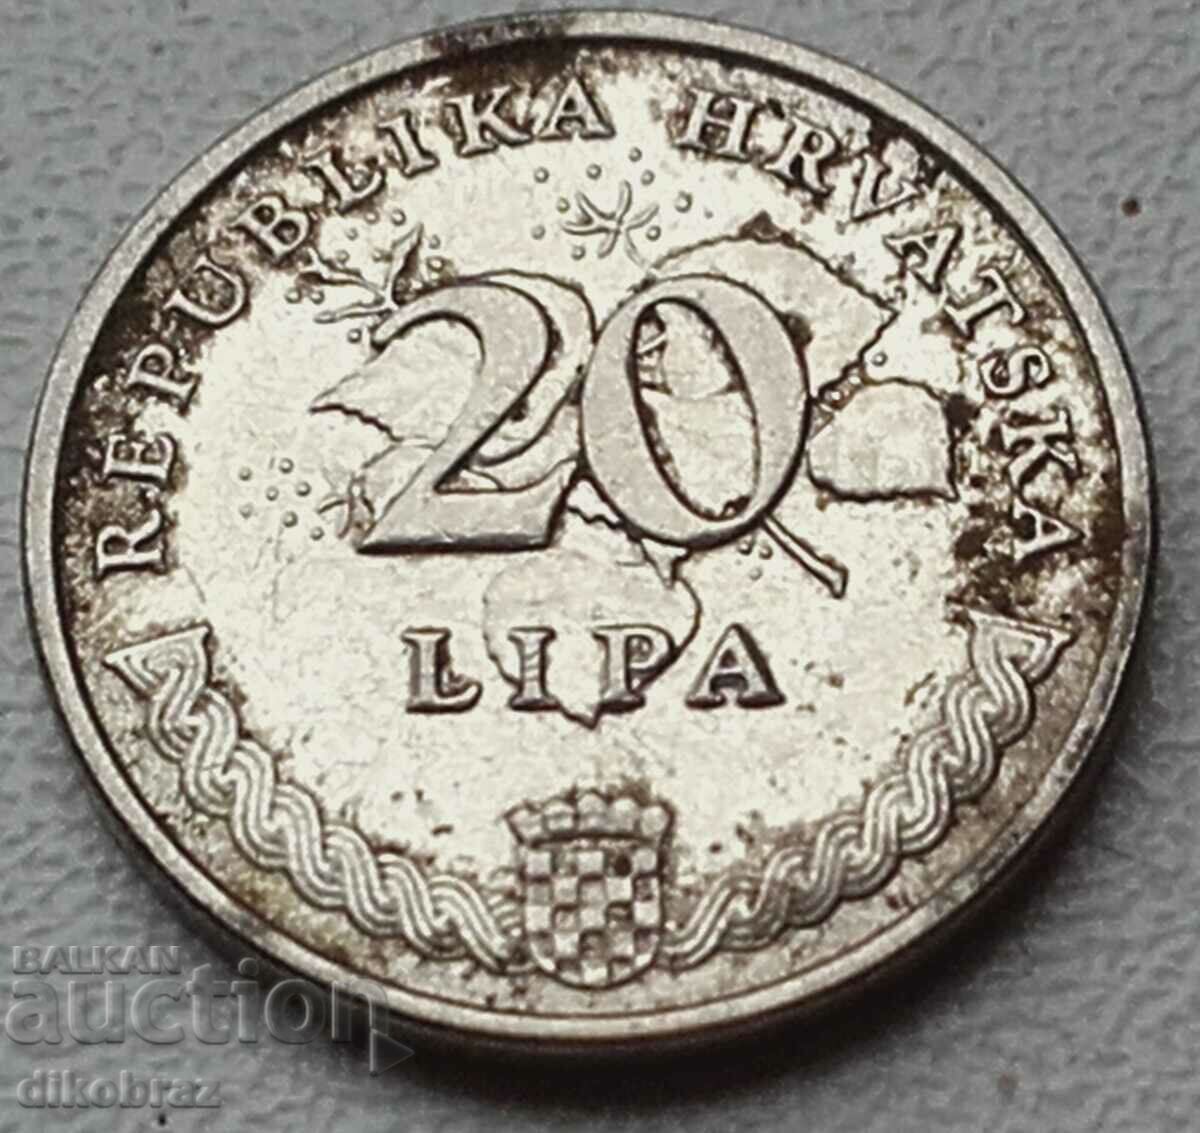 Хърватия - 2015 - 20 липи - от стотинка